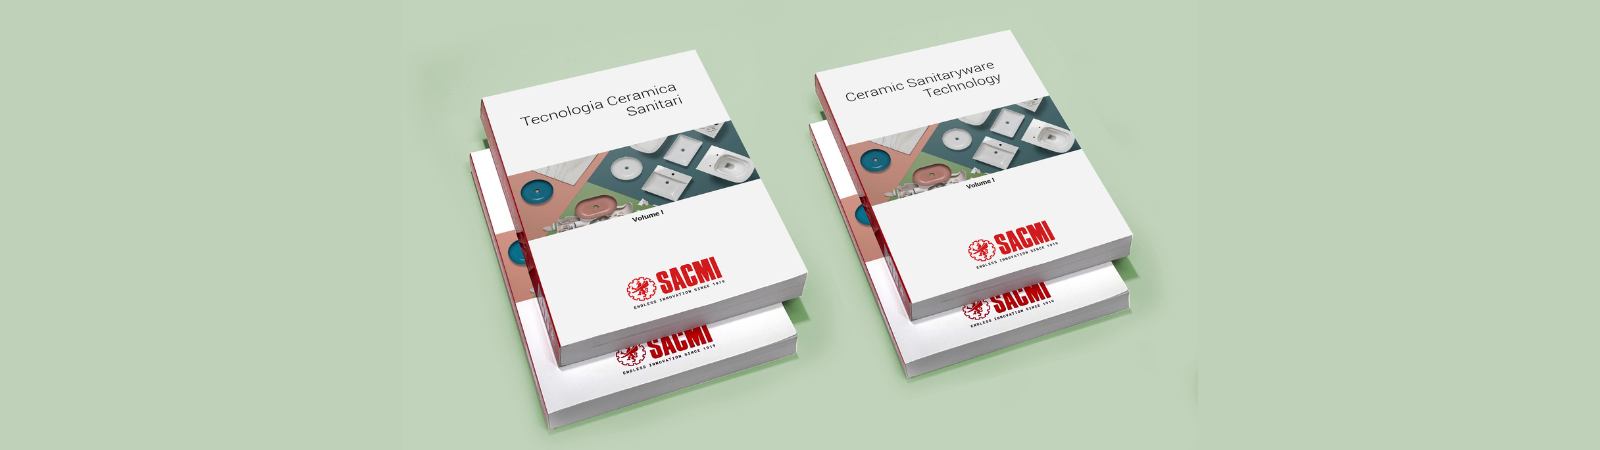 SACMI presenta il nuovo Book Ceramica Sanitaria